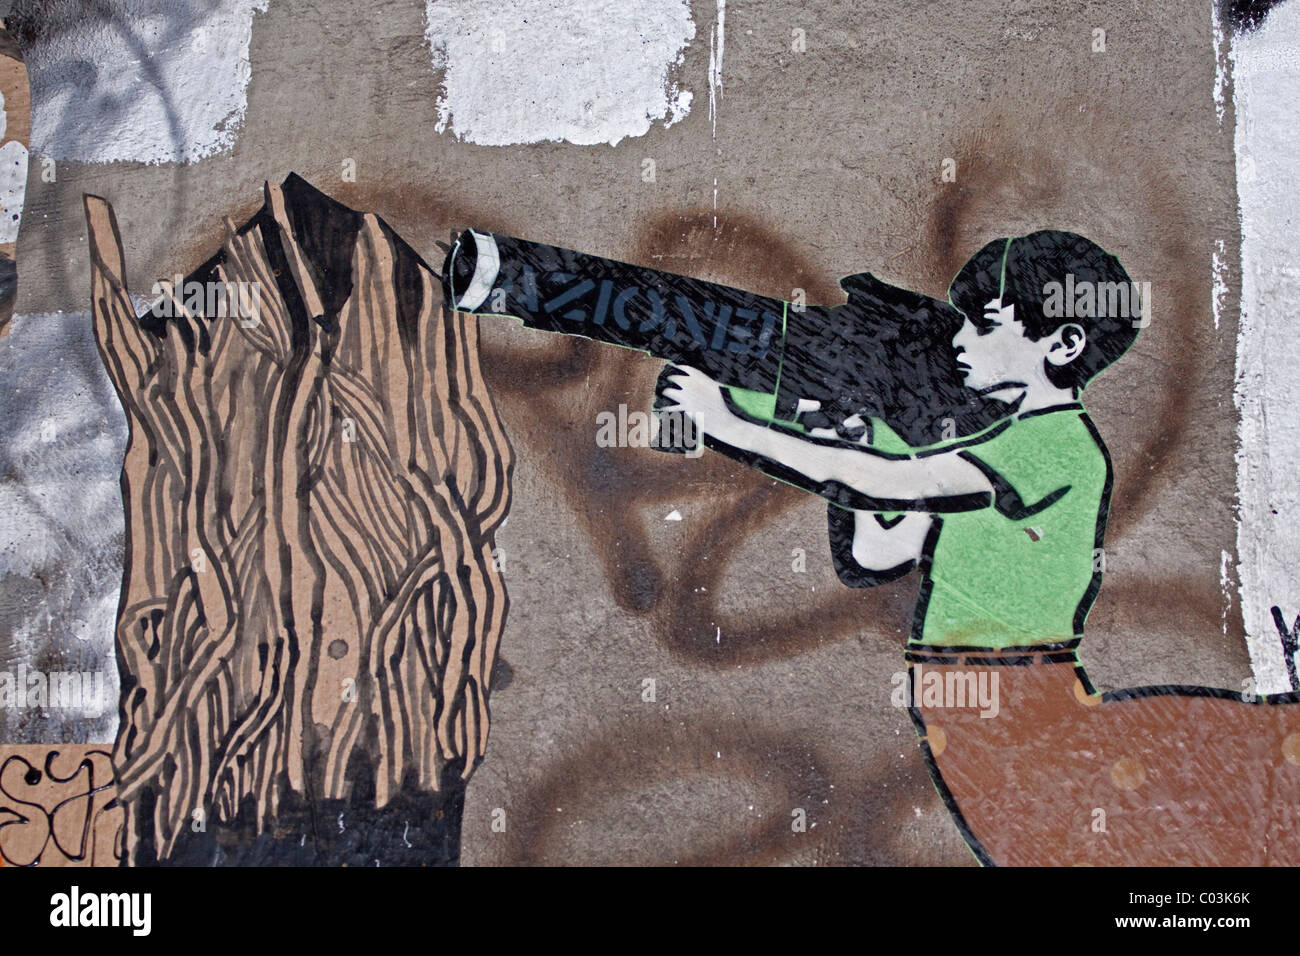 Junge mit einer Panzerfaust, ein Symbol von Kindersoldaten, Graffiti auf eine Mauer in Berlin, Deutschland, Europa Stockfoto